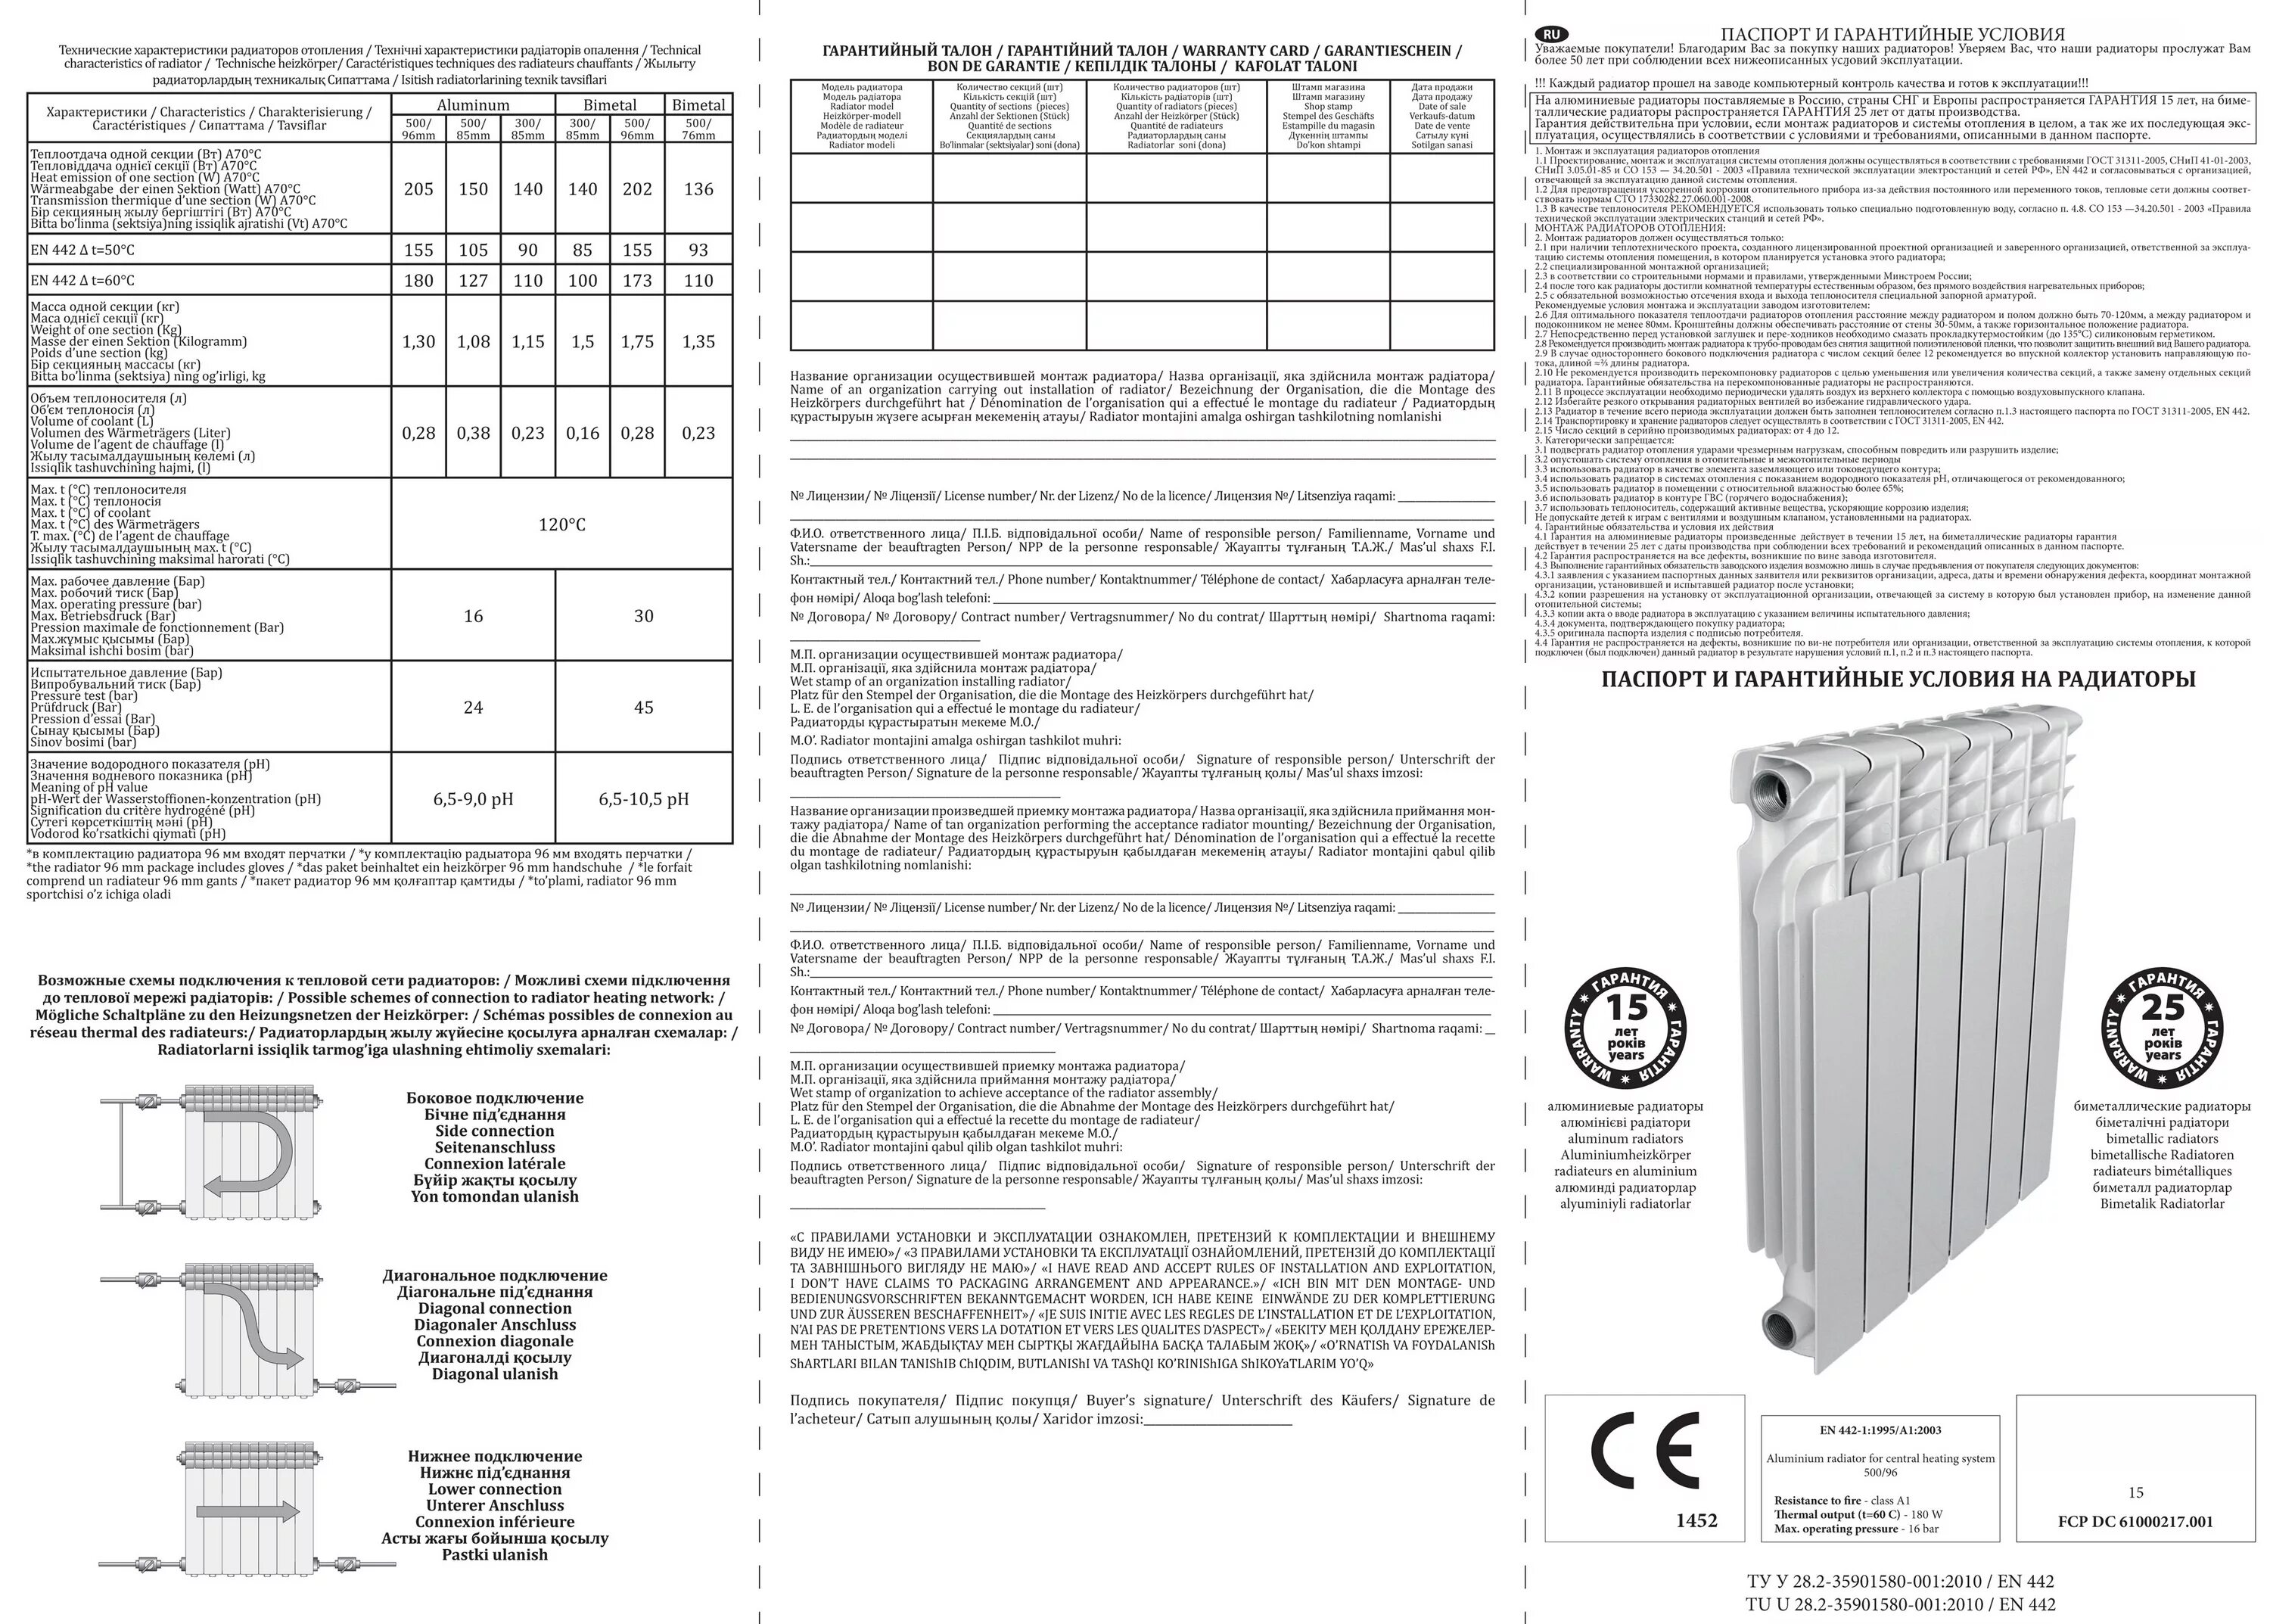 Радиаторы отопления инструкция